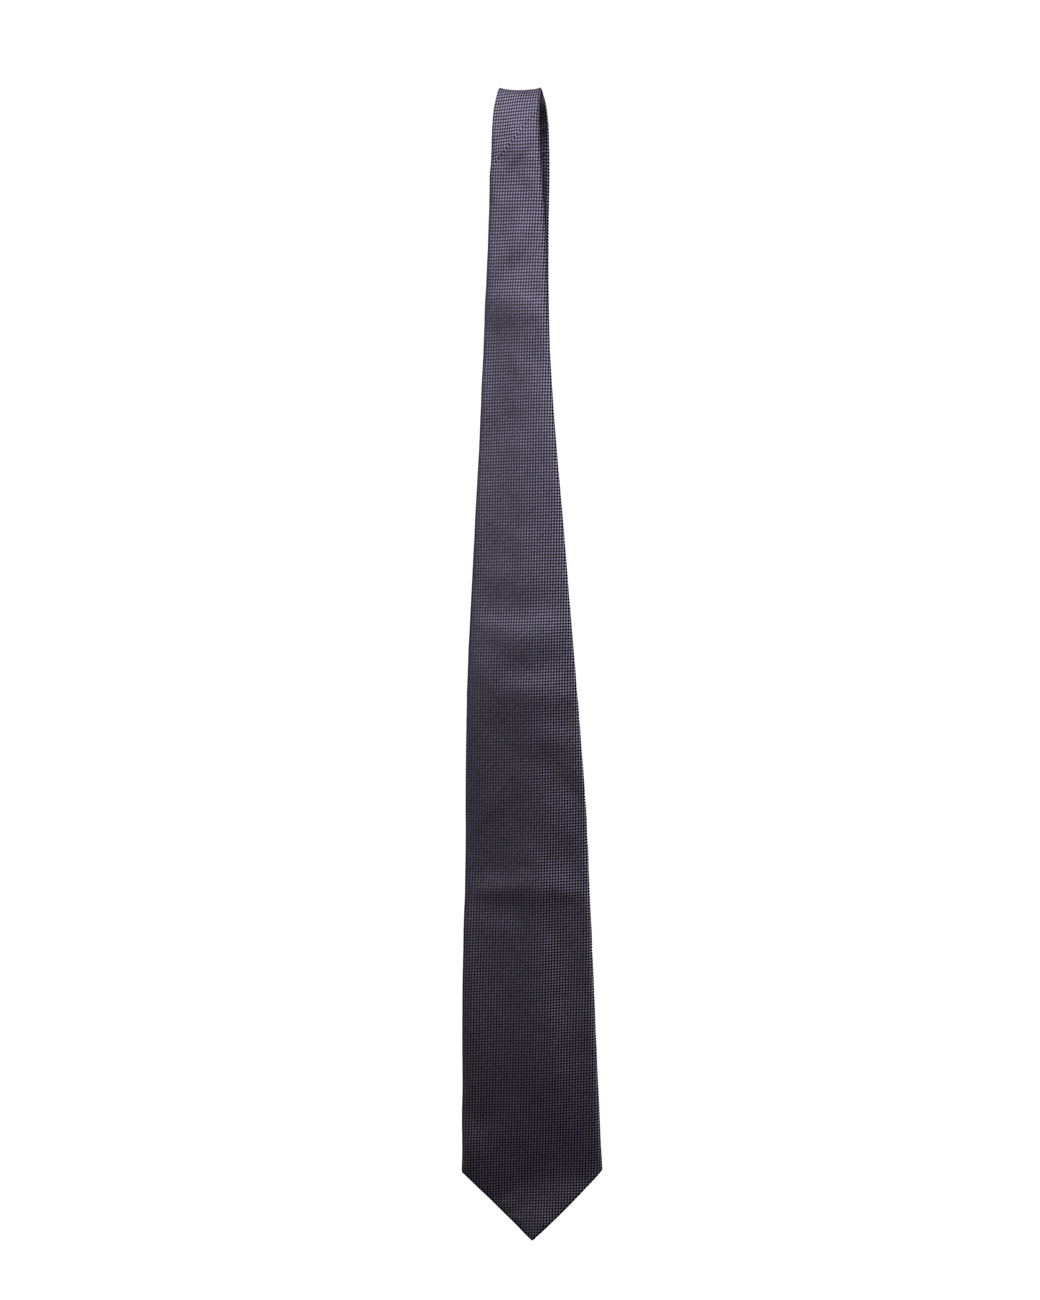 Cravate noire violette Gucci